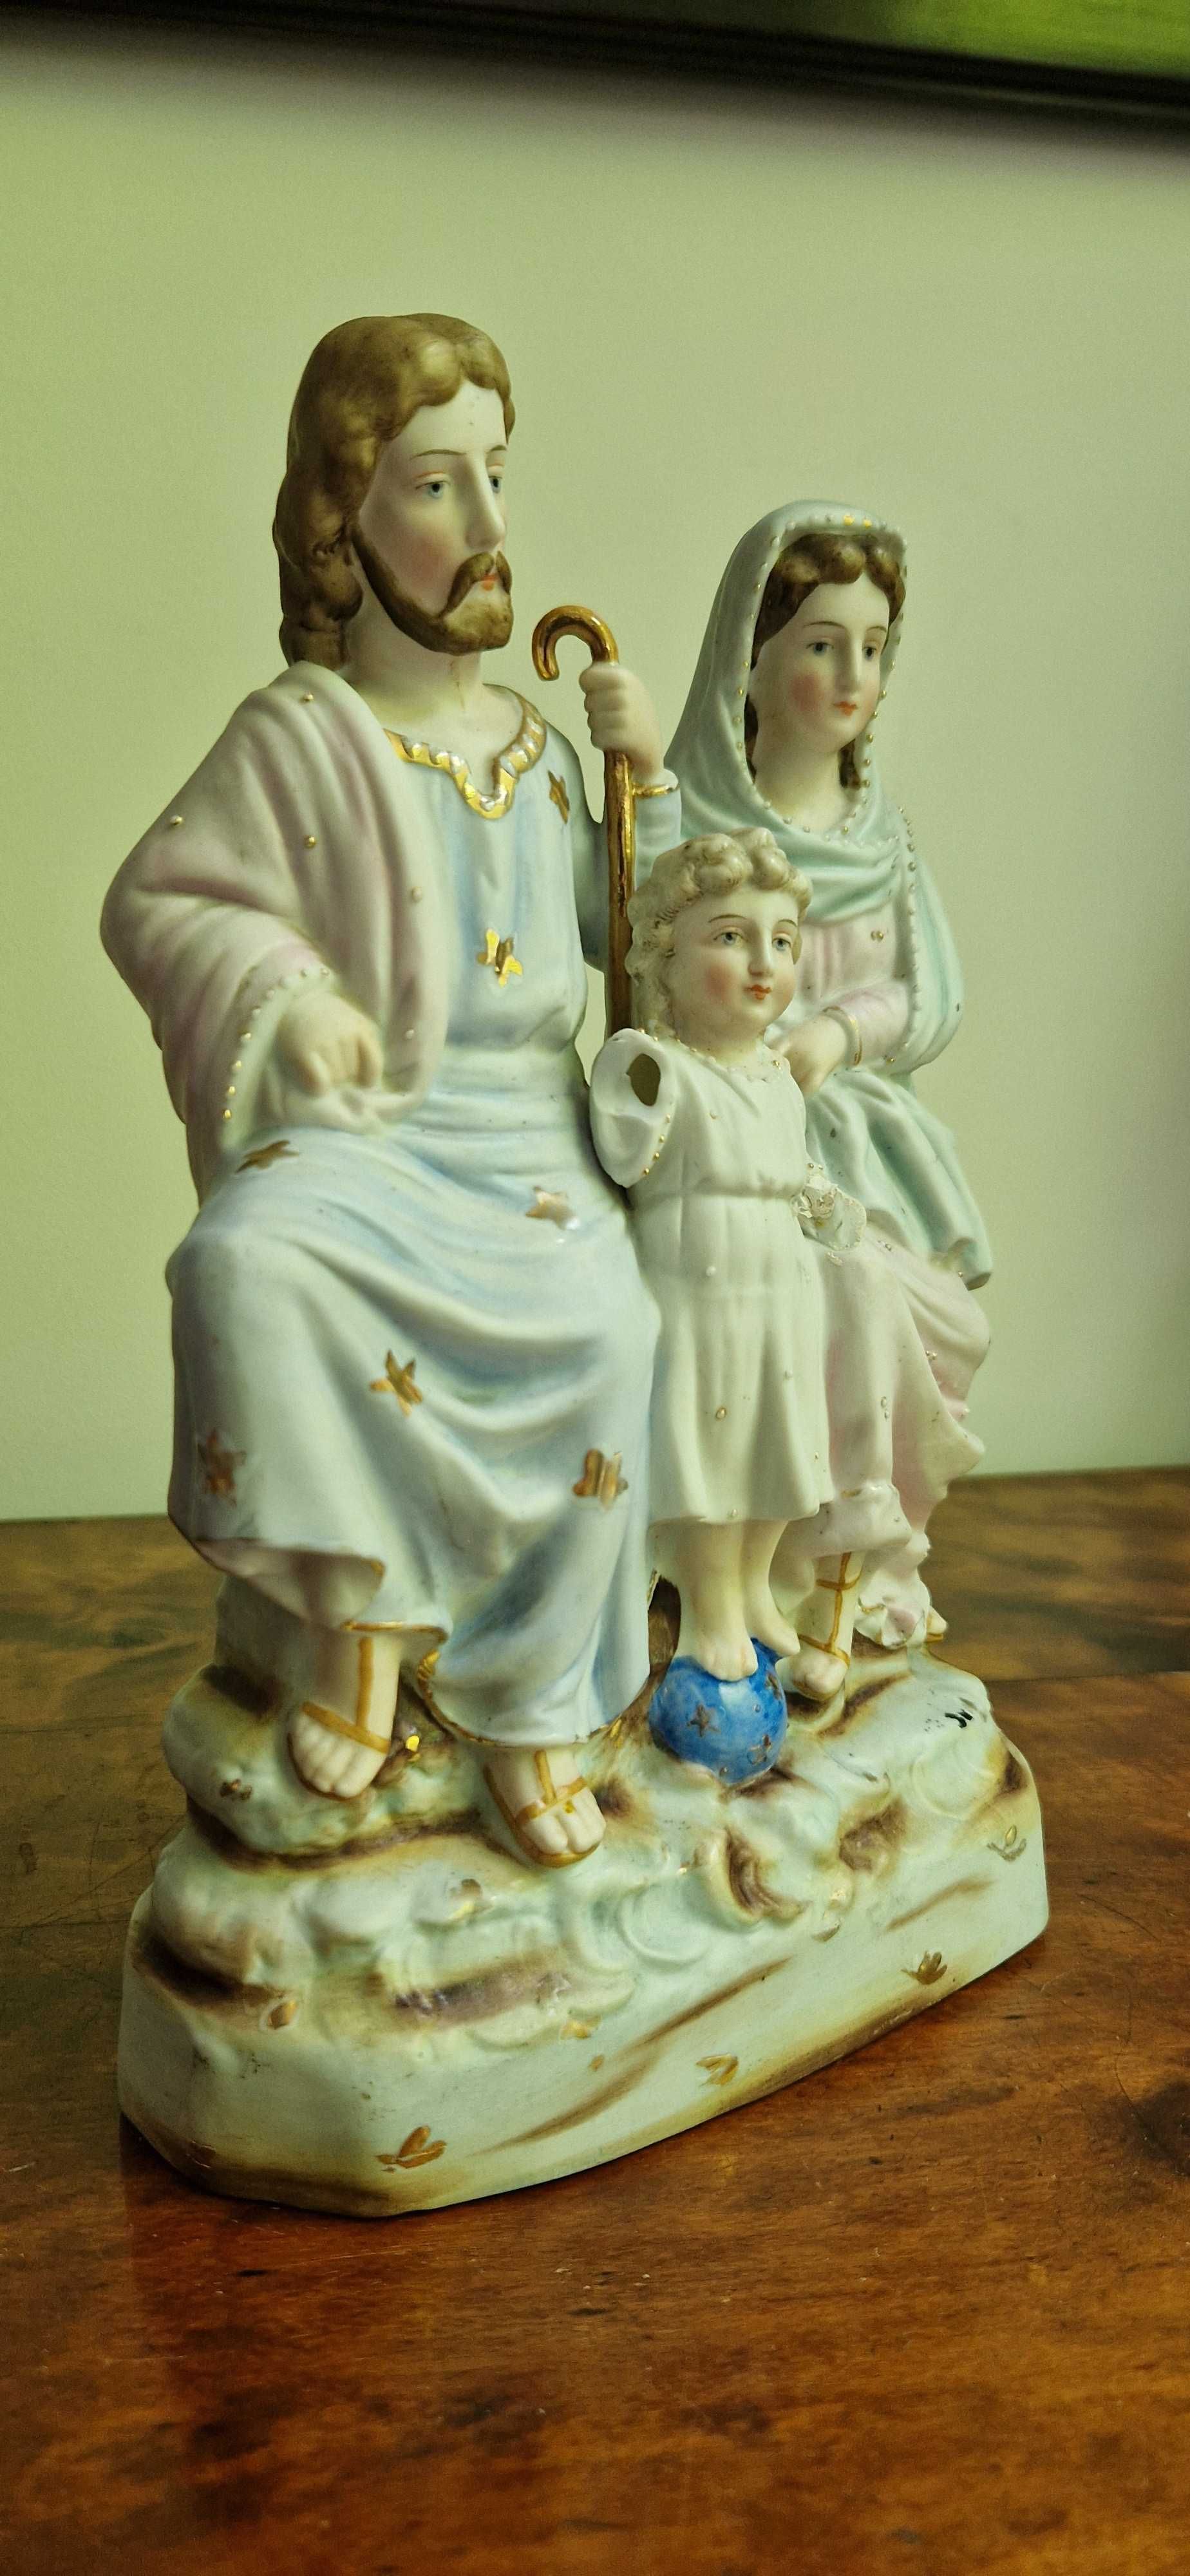 Świeta rodzina rzeźba porcelana biskwitowa antyk dewocjonalia dekor